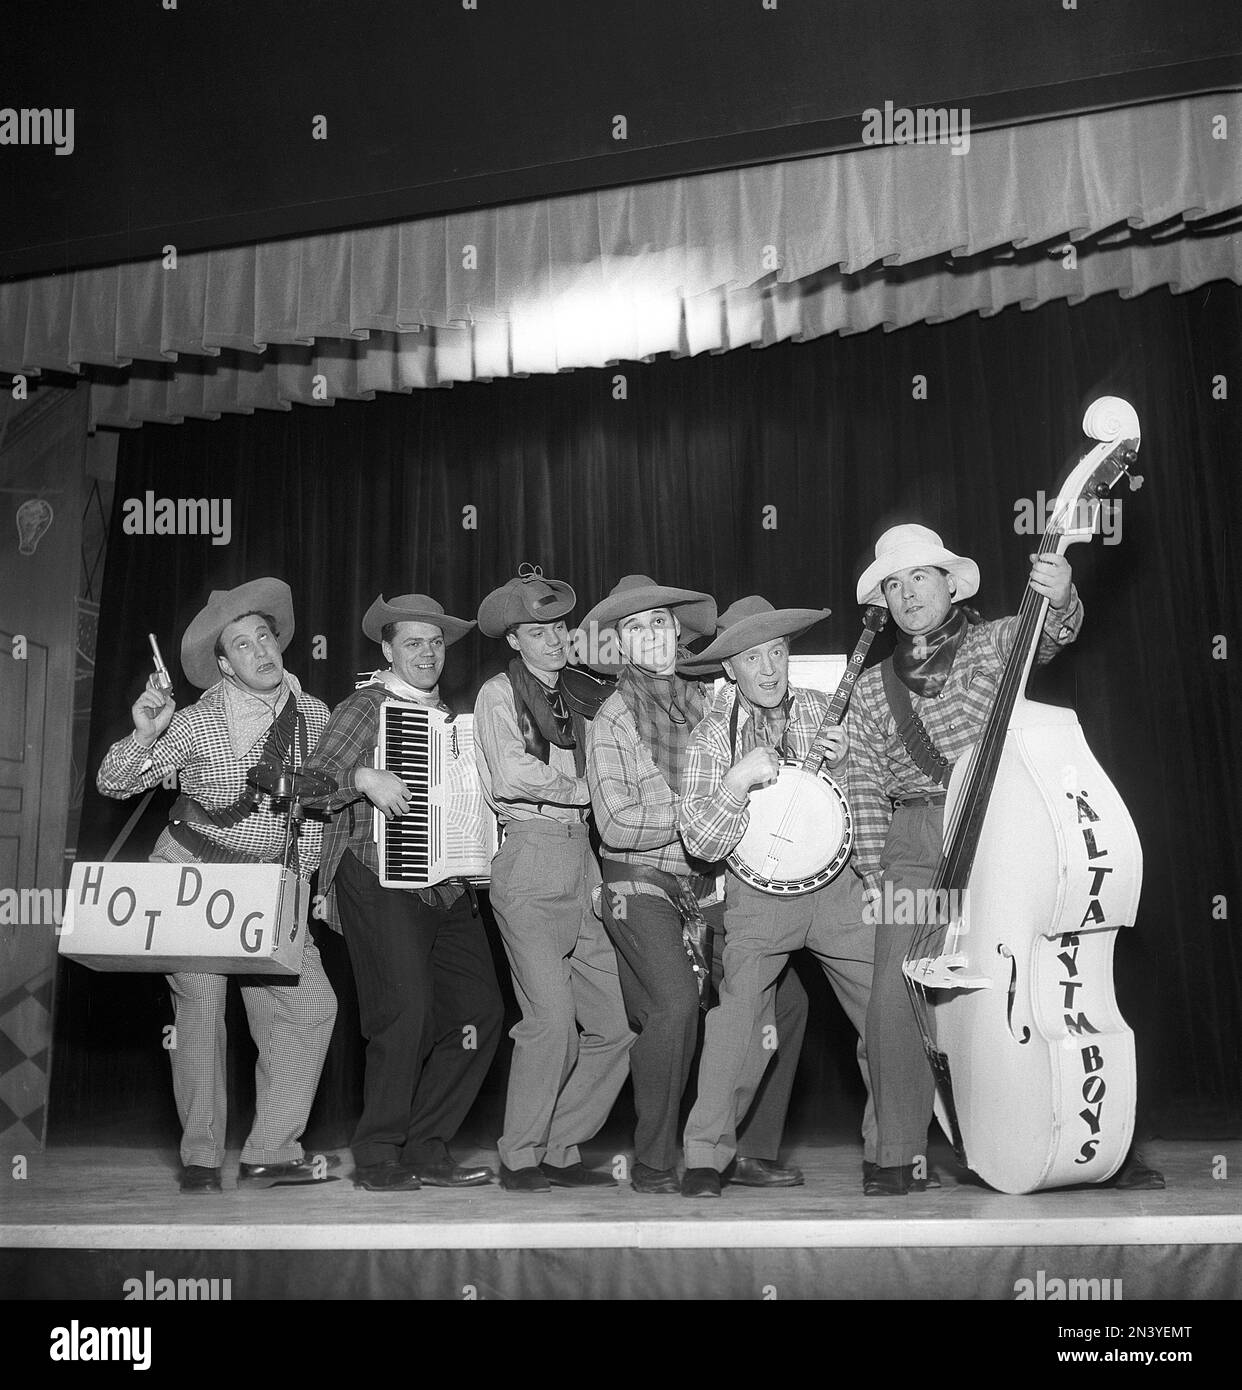 Musik in den 1950er Jahren. Eine Band auf der Bühne, verkleidet als Cowboys, die ihre Instrumente spielen. Zu den Bandmitgliedern gehören Carl-Gustaf Lindsted und Lennart Sundevall. Schweden 1953 Kristoffersson Ref BK97-8 Stockfoto